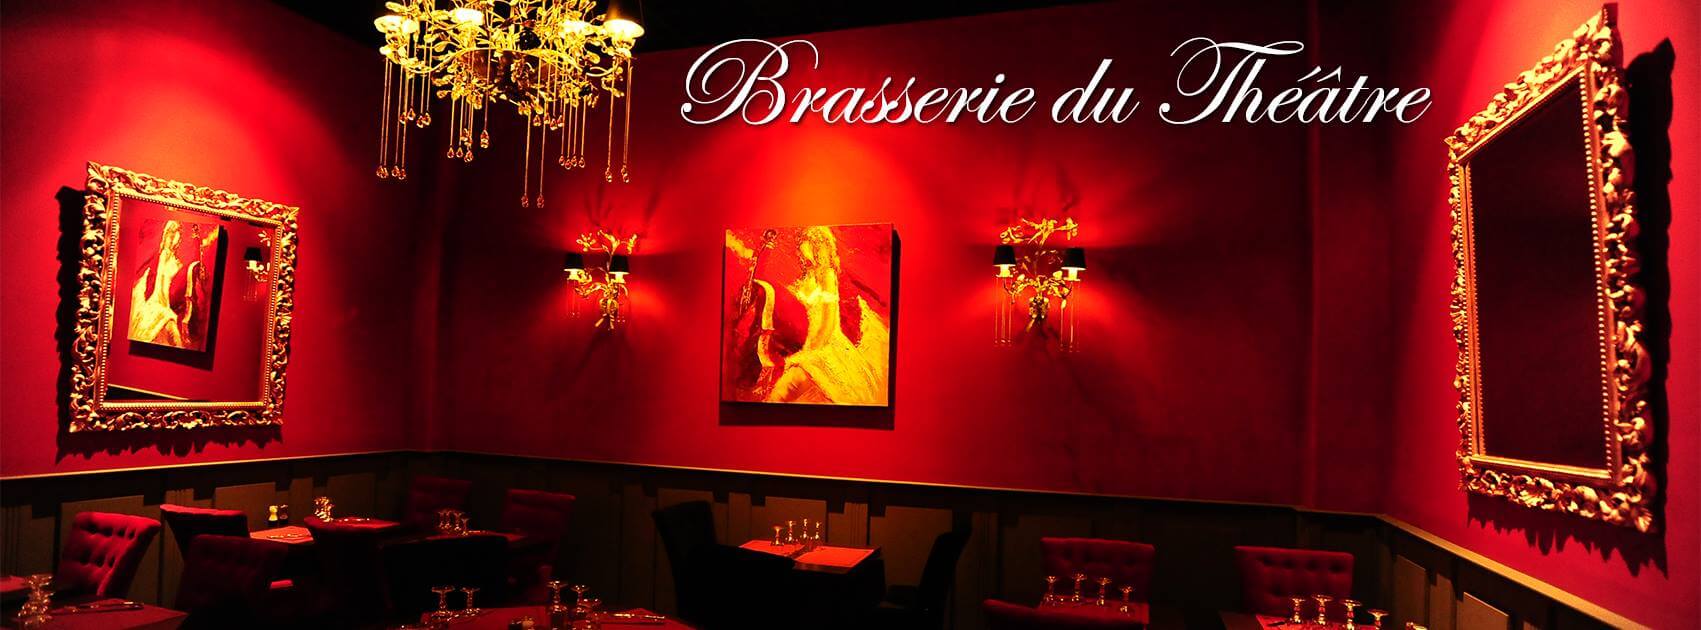 La Brasserie du Theatre restaurant Fort-de-France martinique